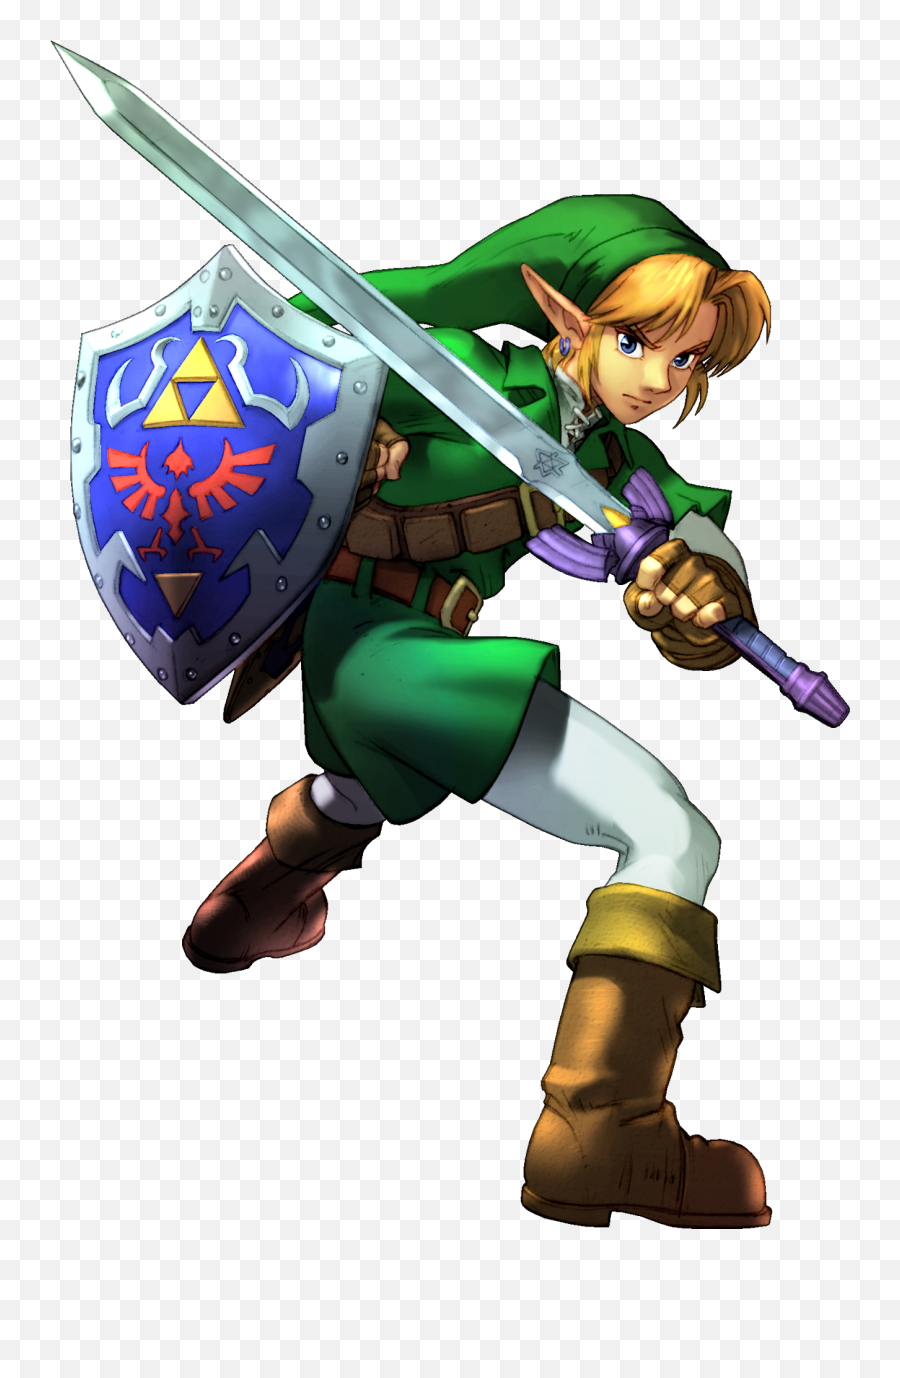 Png Transparent Link Zelda - Link The Legend Of Zelda,Zelda Png